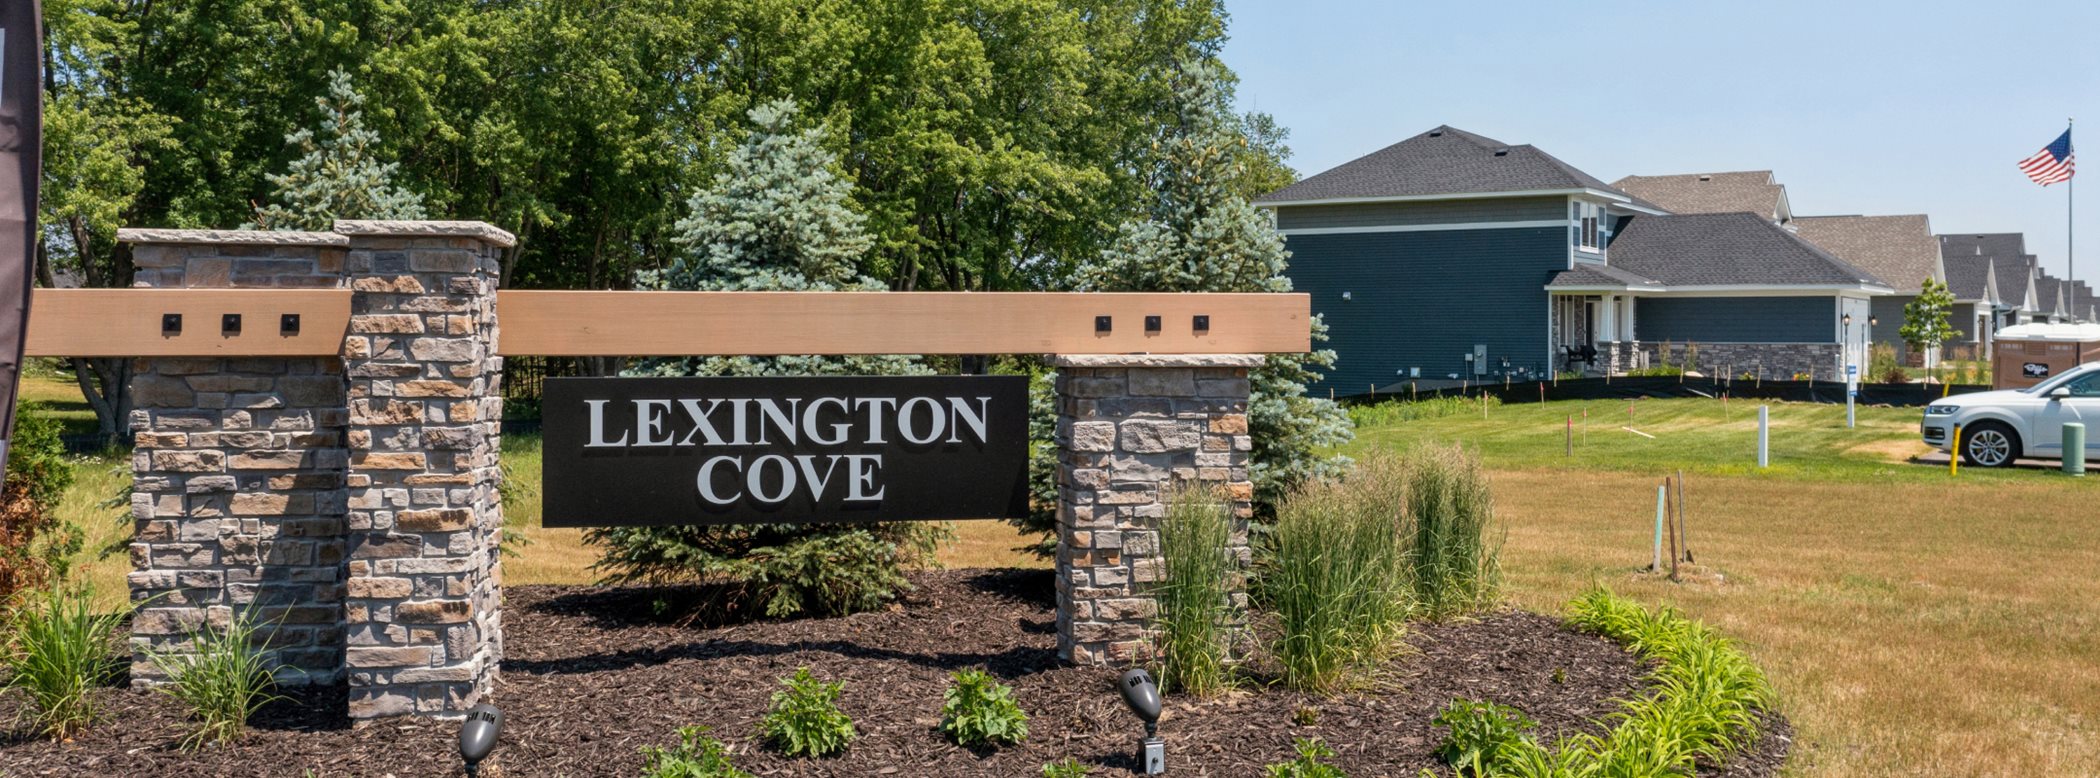 Lexington Cove Entrance